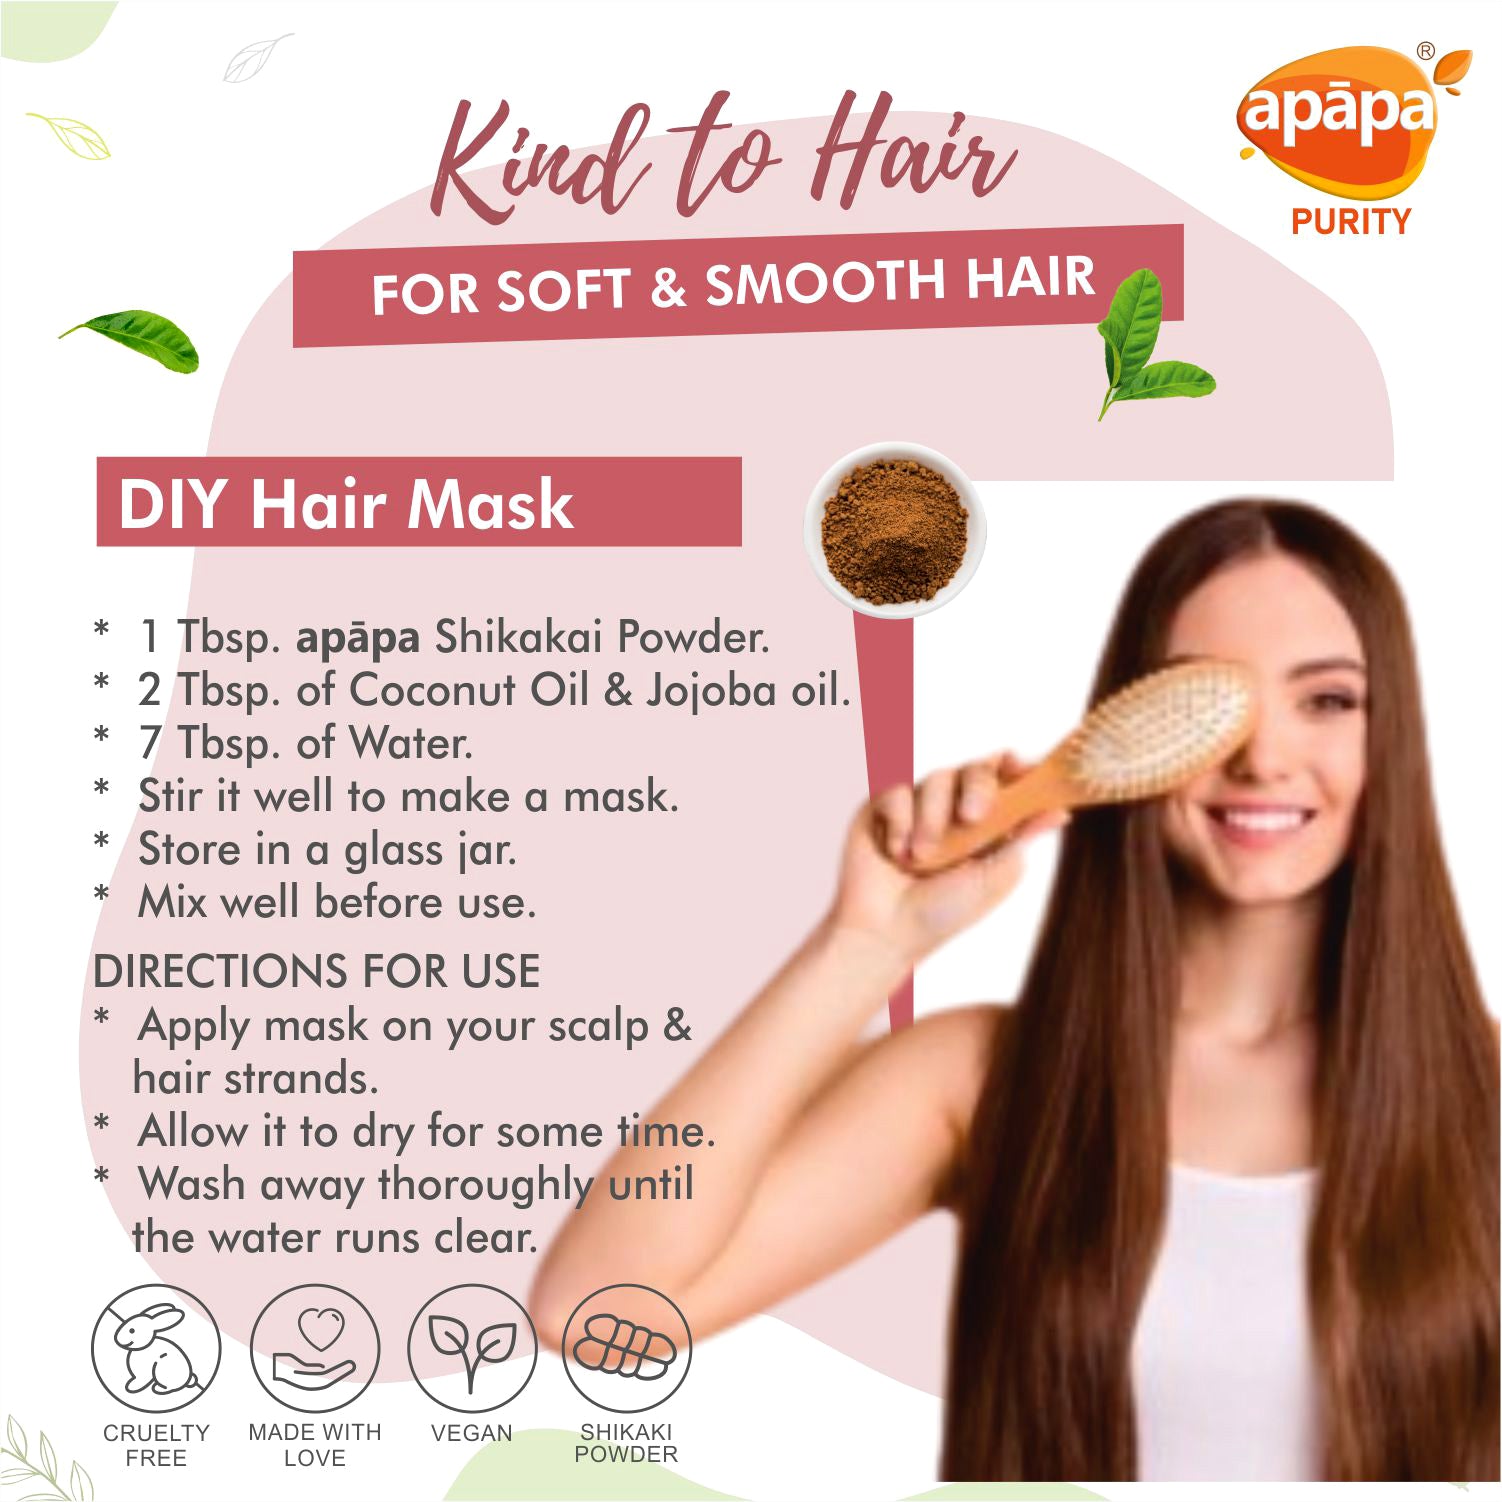 APĀPA Shiny Hair - Shikakai Powder for Hair